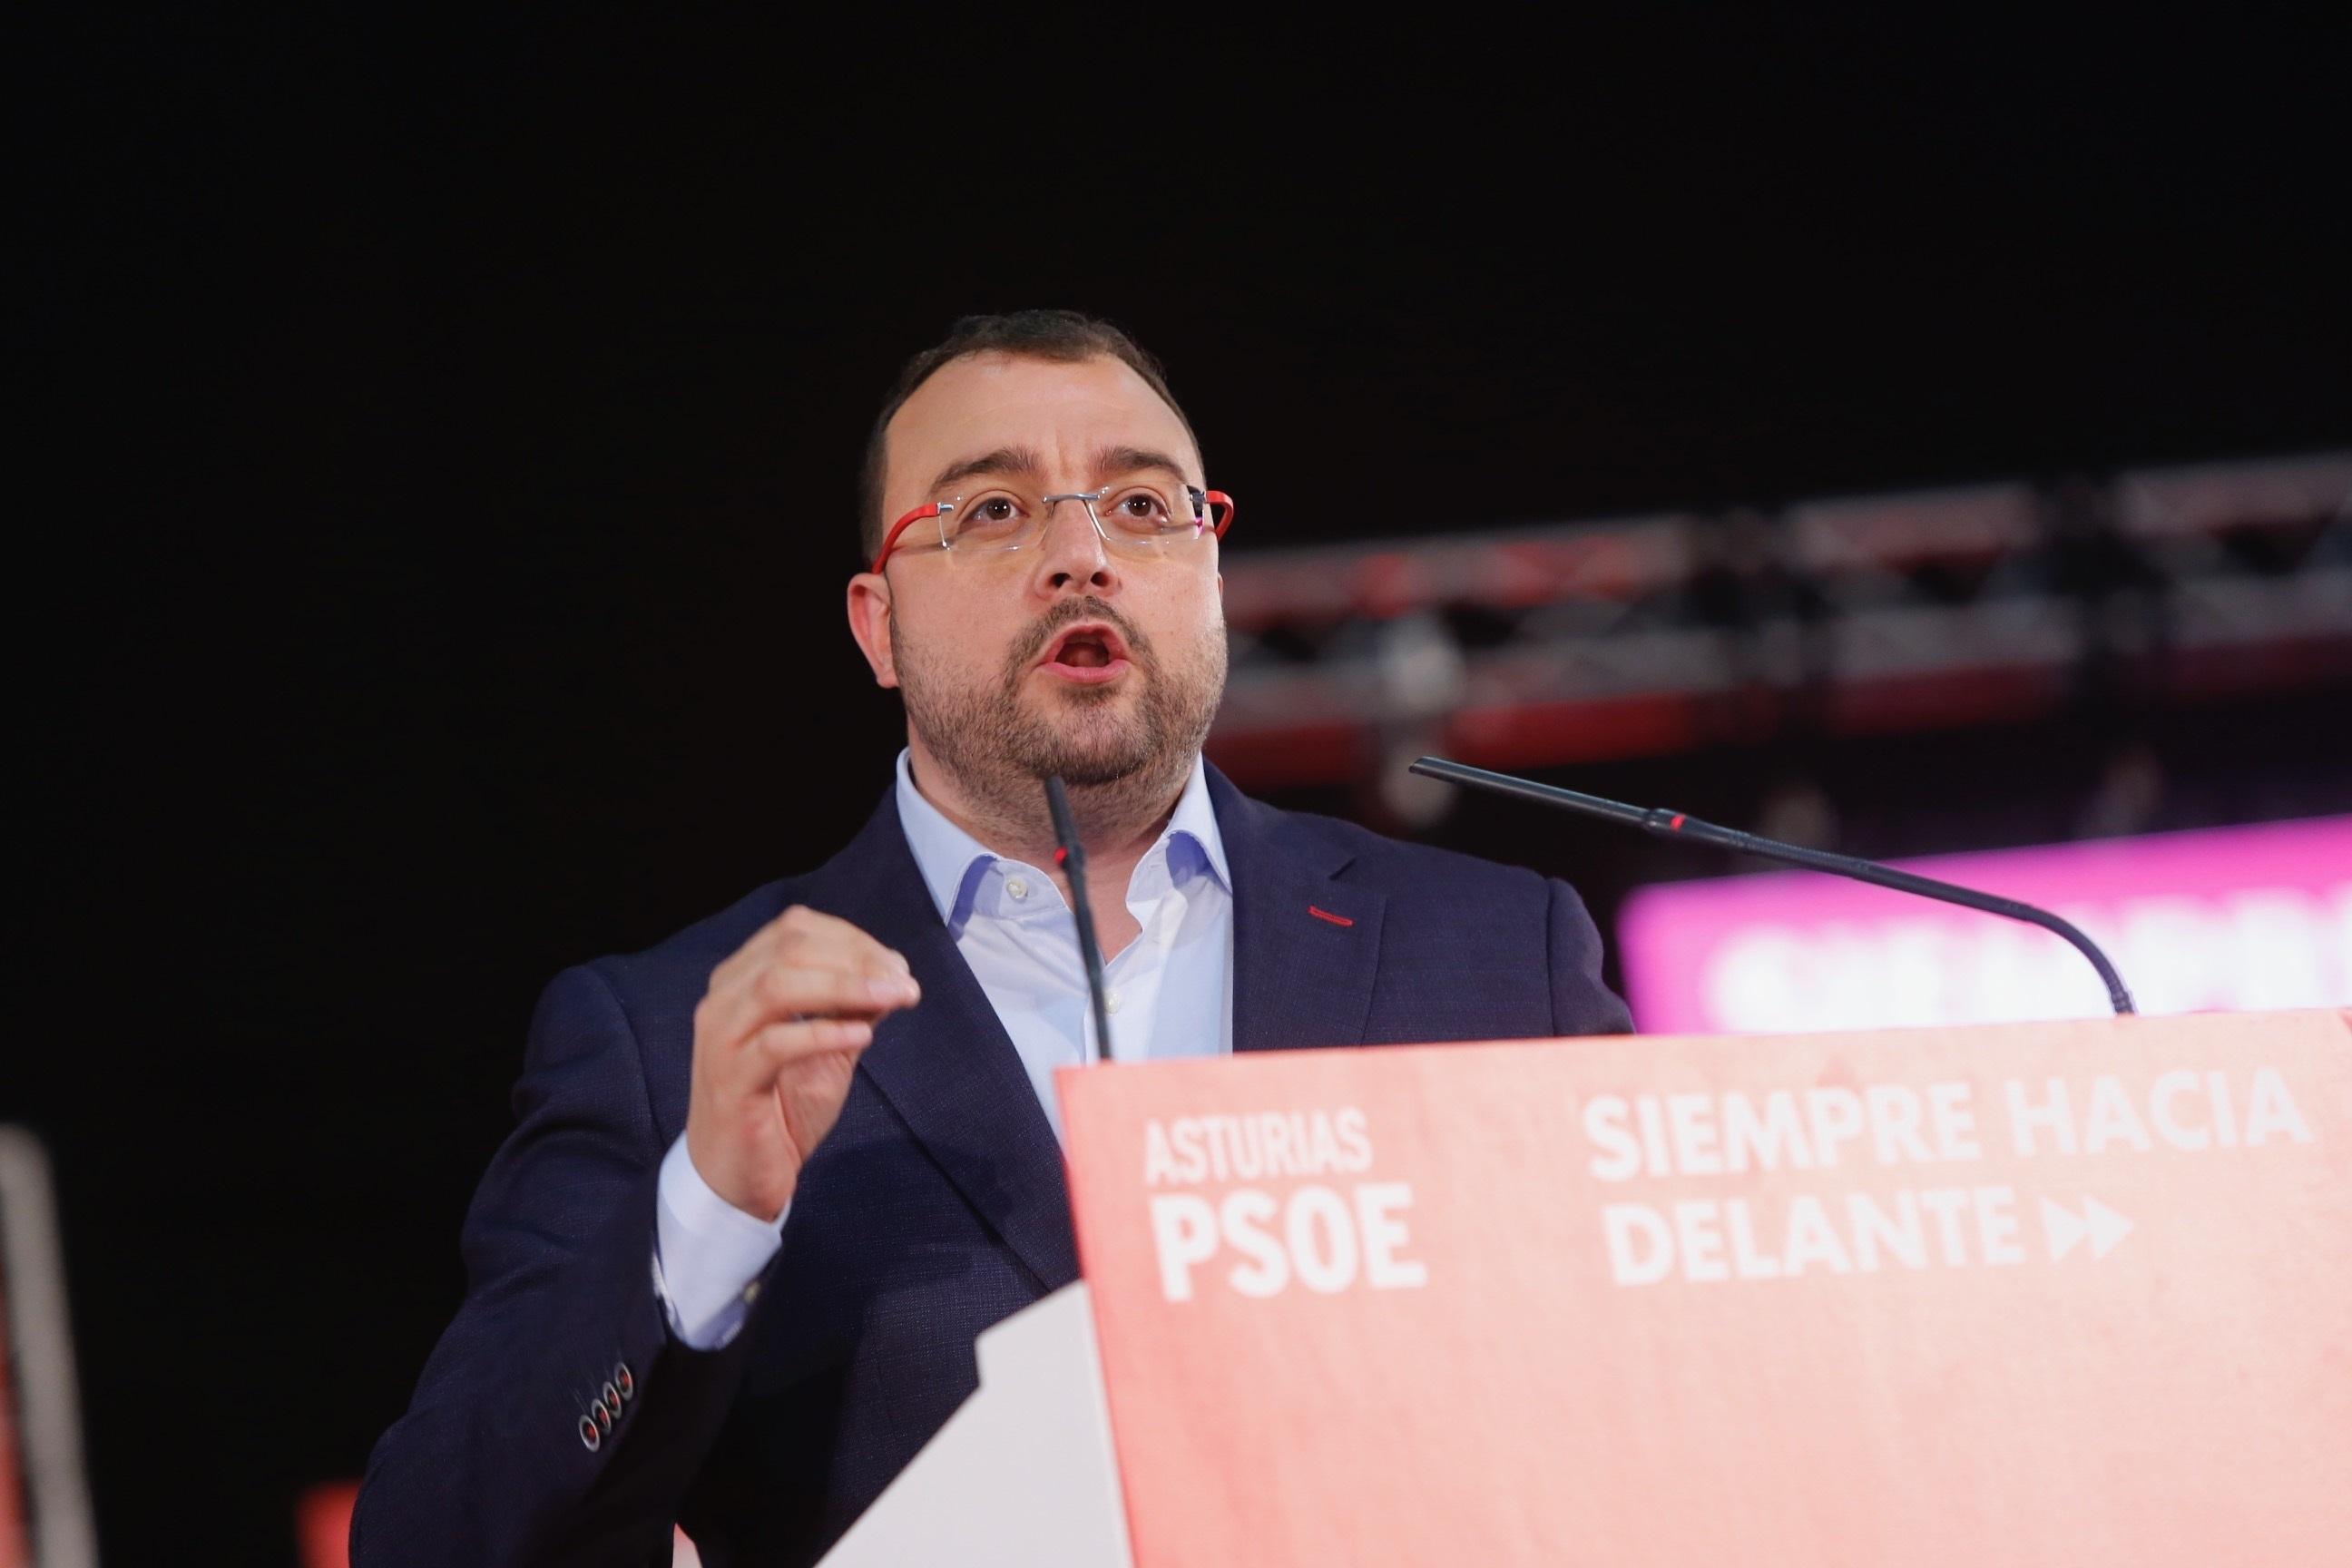  El candidato del PSOE a la Presidencia del Principado Adrián Barbón durante un mitin en Gijón